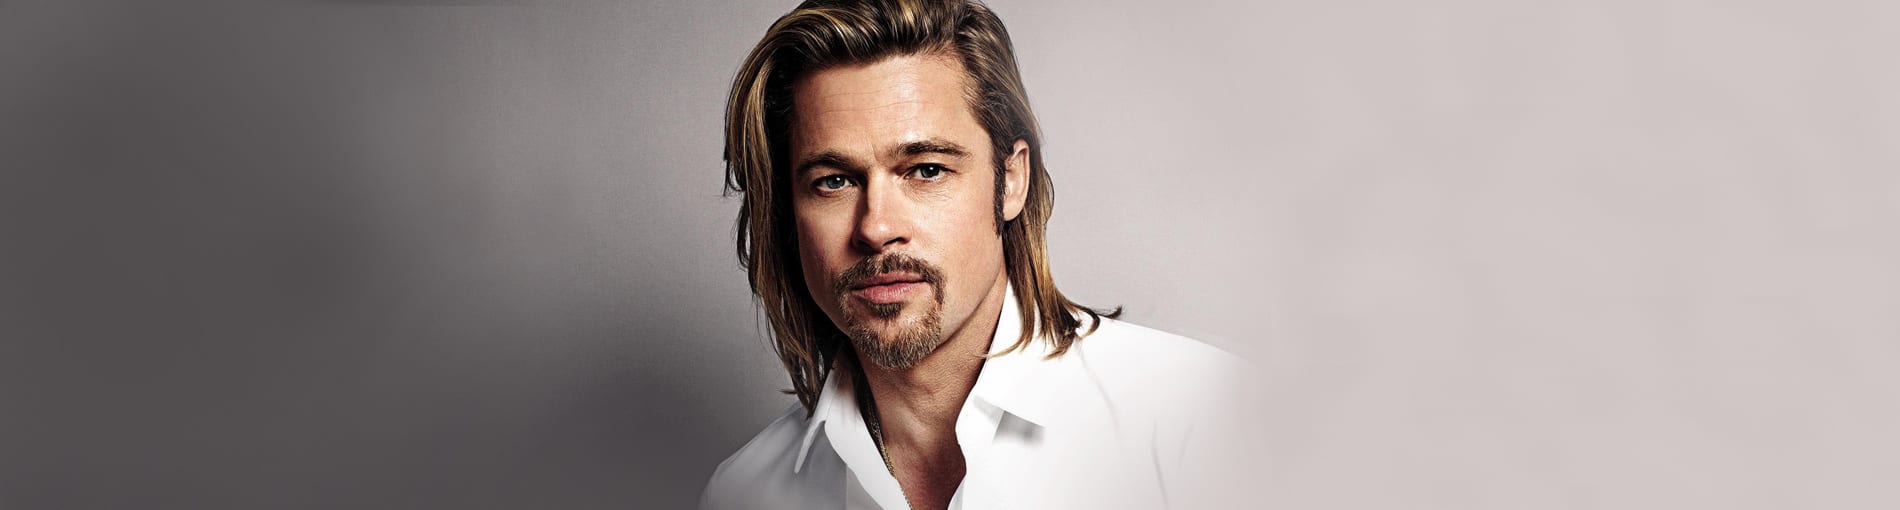 ¿Quién es Brad Pitt? Te contamos 8 cosas que no sabías sobre él.